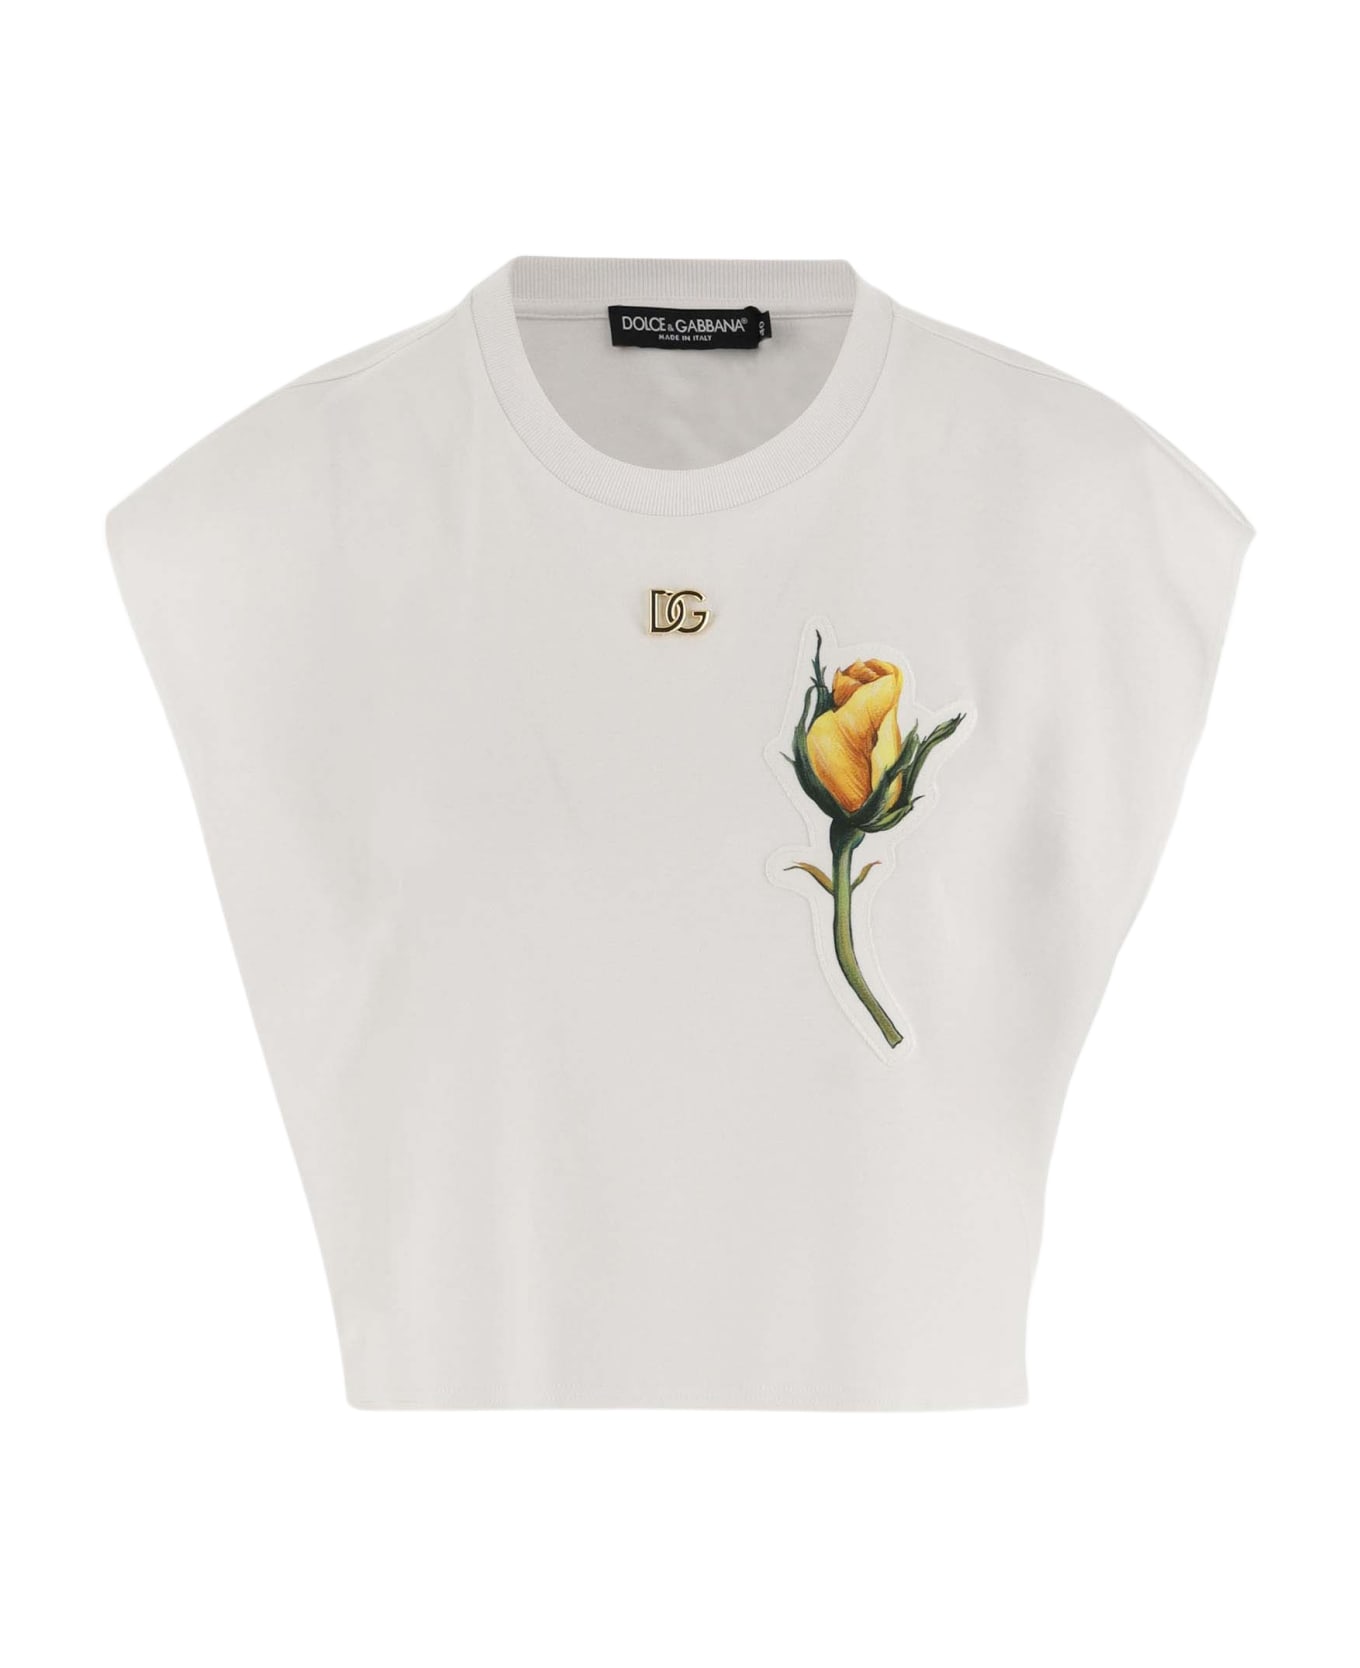 Dolce & Gabbana Cotton Crop T-shirt - White Tシャツ